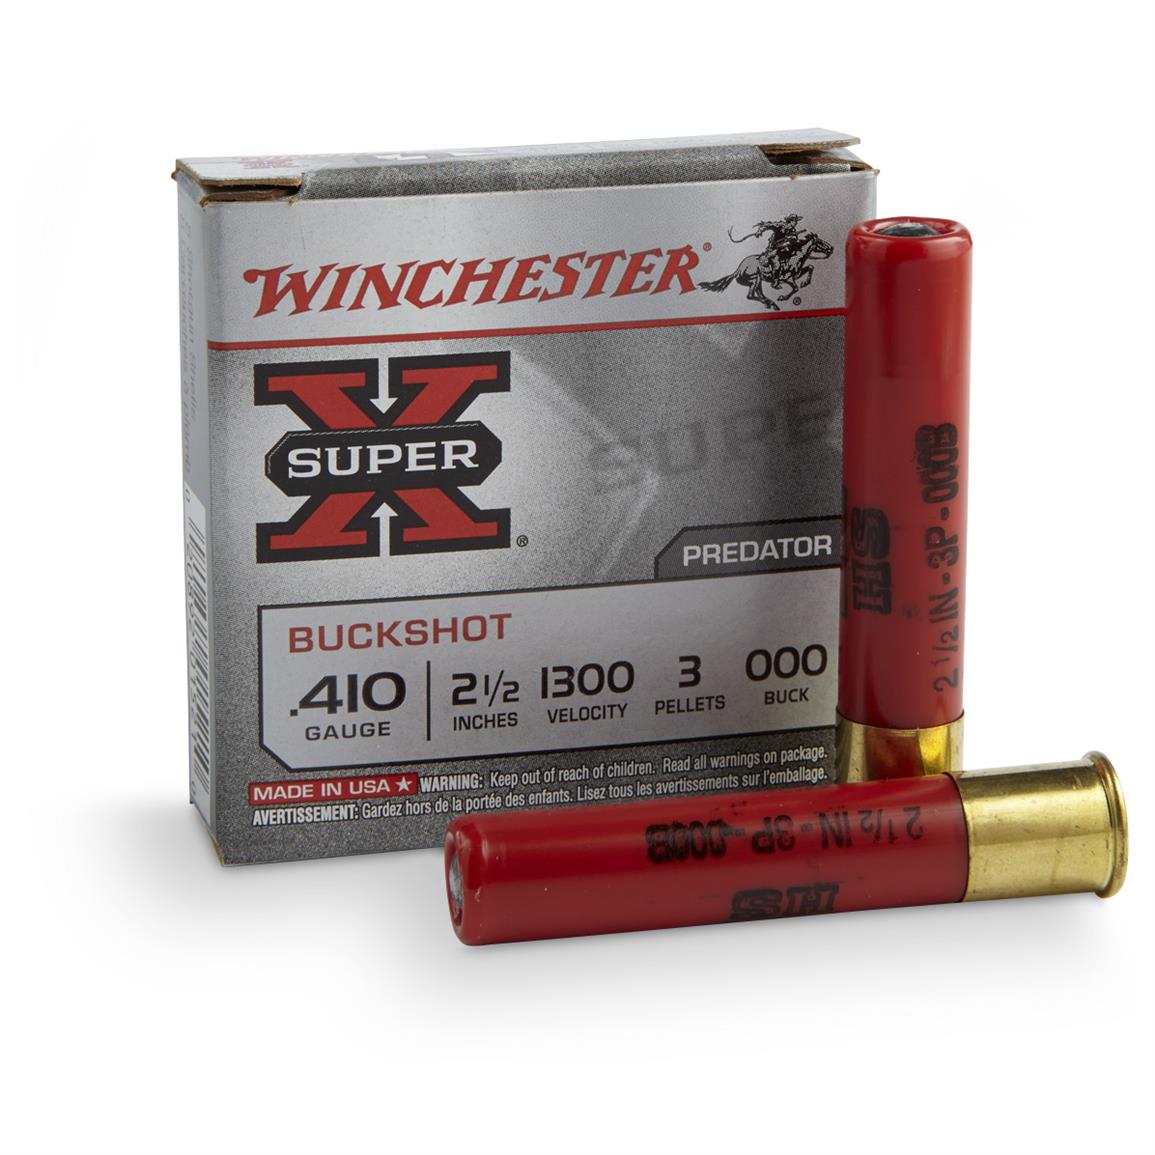 5 Rounds Winchester Super X 410 2 1 2 000 Buckshot 3 Pellets 167246 410 Gauge Shells At